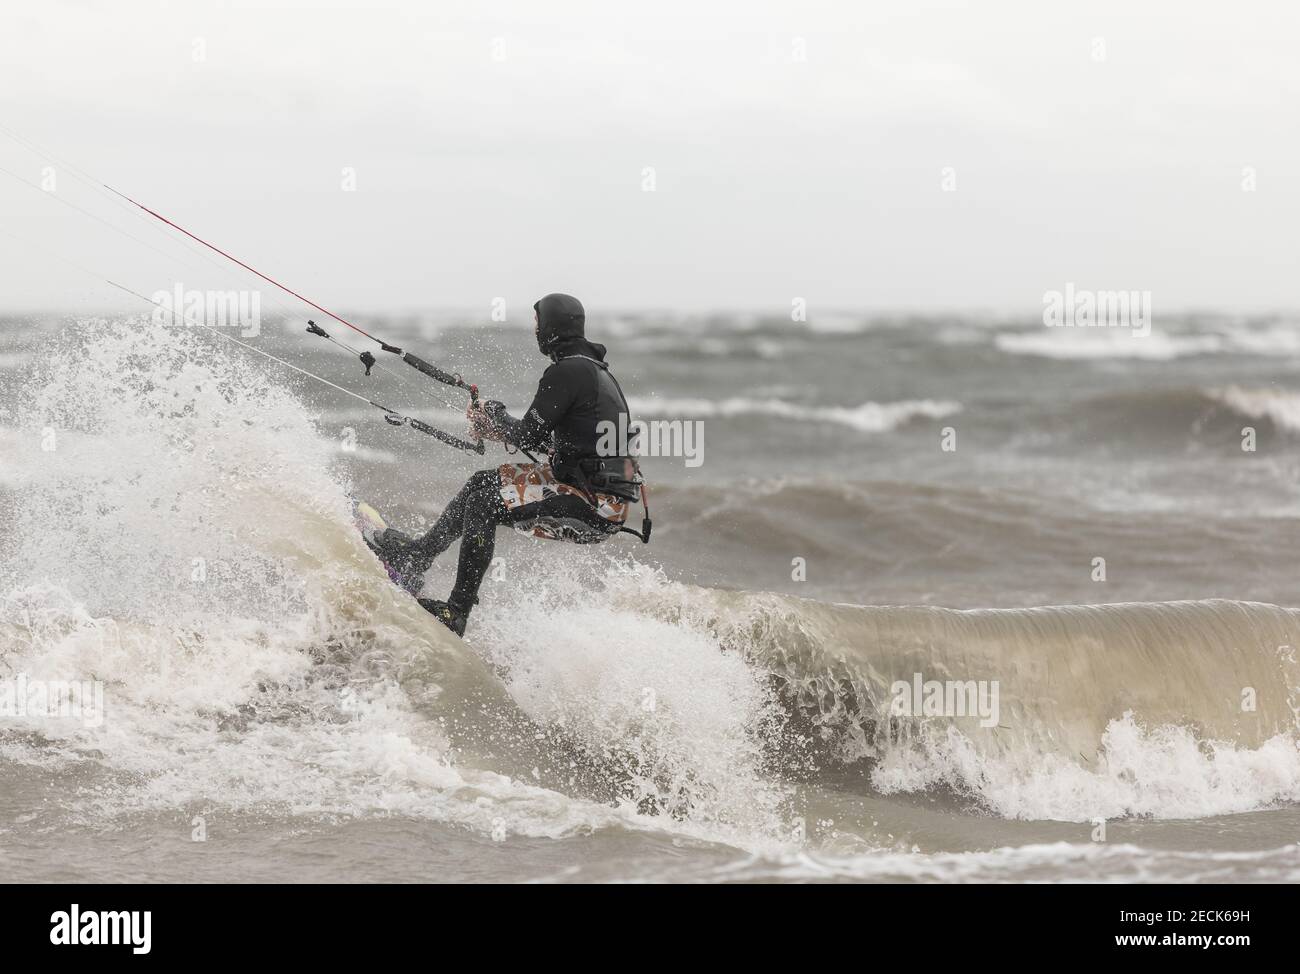 Ein Kiteboarder, der an einem regnerischen Tag auf den Wellen im Meer reitet. Boundary Bay, BC, Kanada-November 17,2020. Selektiver Fokus, Sportfoto, Reisefoto. Stockfoto